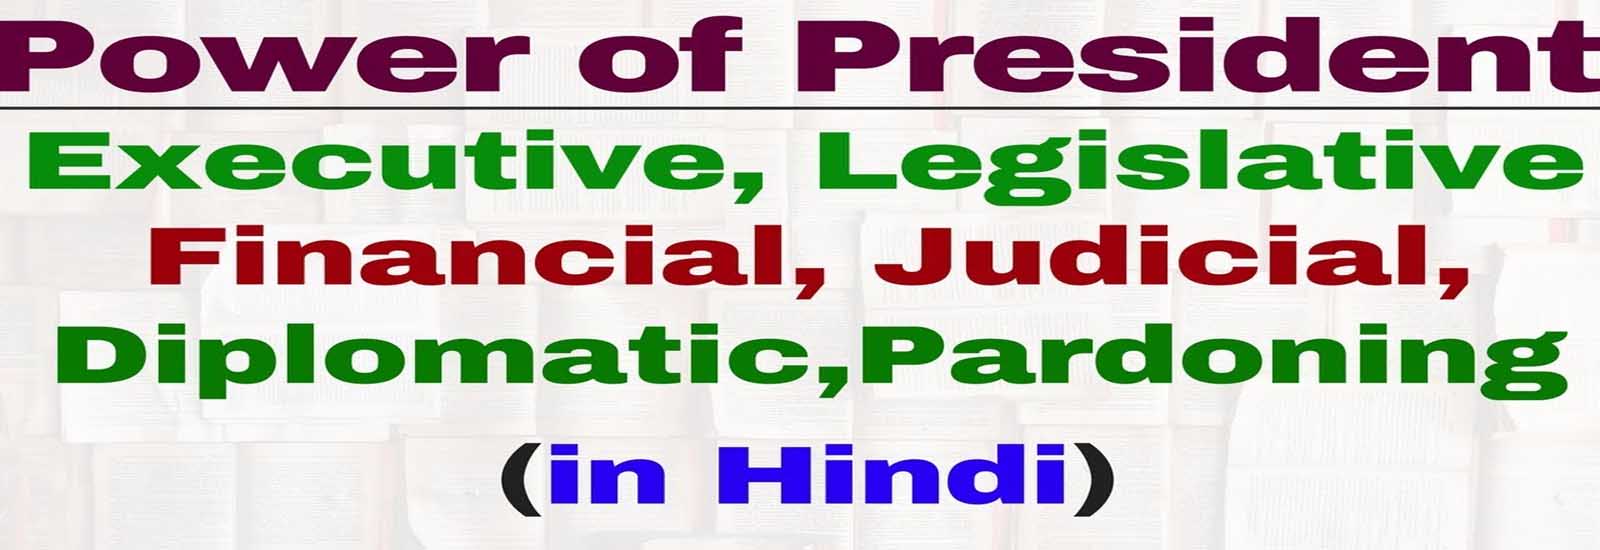 भारत के राष्ट्रपति की शक्तियां व कार्य